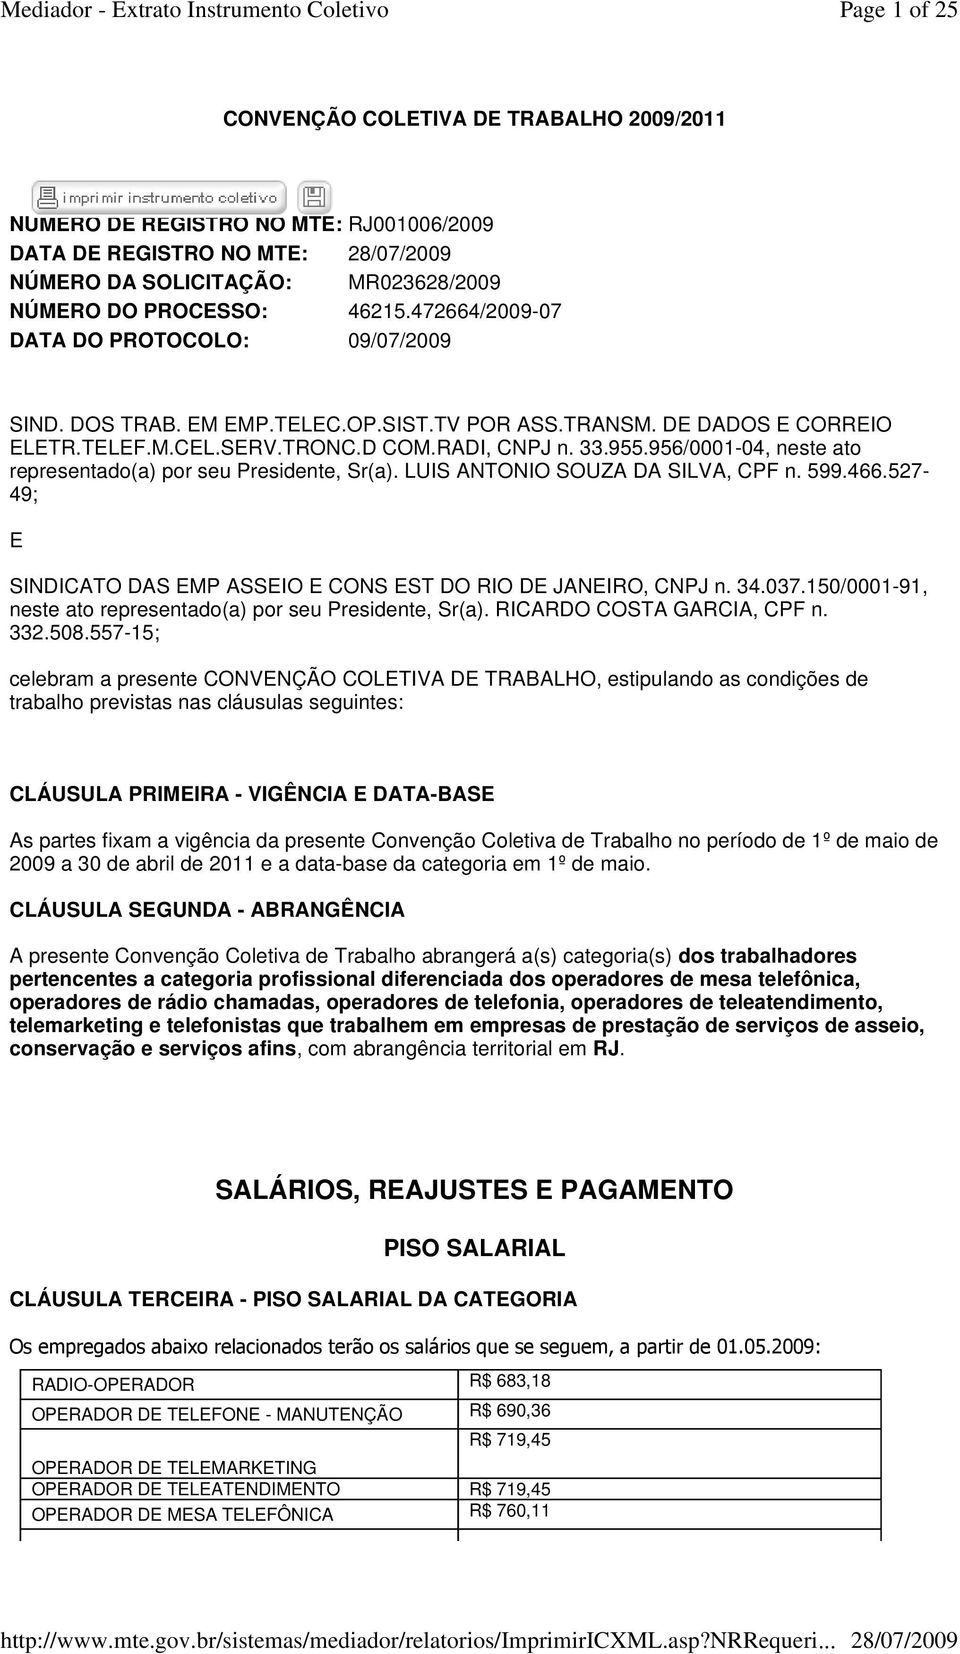 956/0001-04, neste ato representado(a) por seu Presidente, Sr(a). LUIS ANTONIO SOUZA DA SILVA, CPF n. 599.466.527-49; E SINDICATO DAS EMP ASSEIO E CONS EST DO RIO DE JANEIRO, CNPJ n. 34.037.